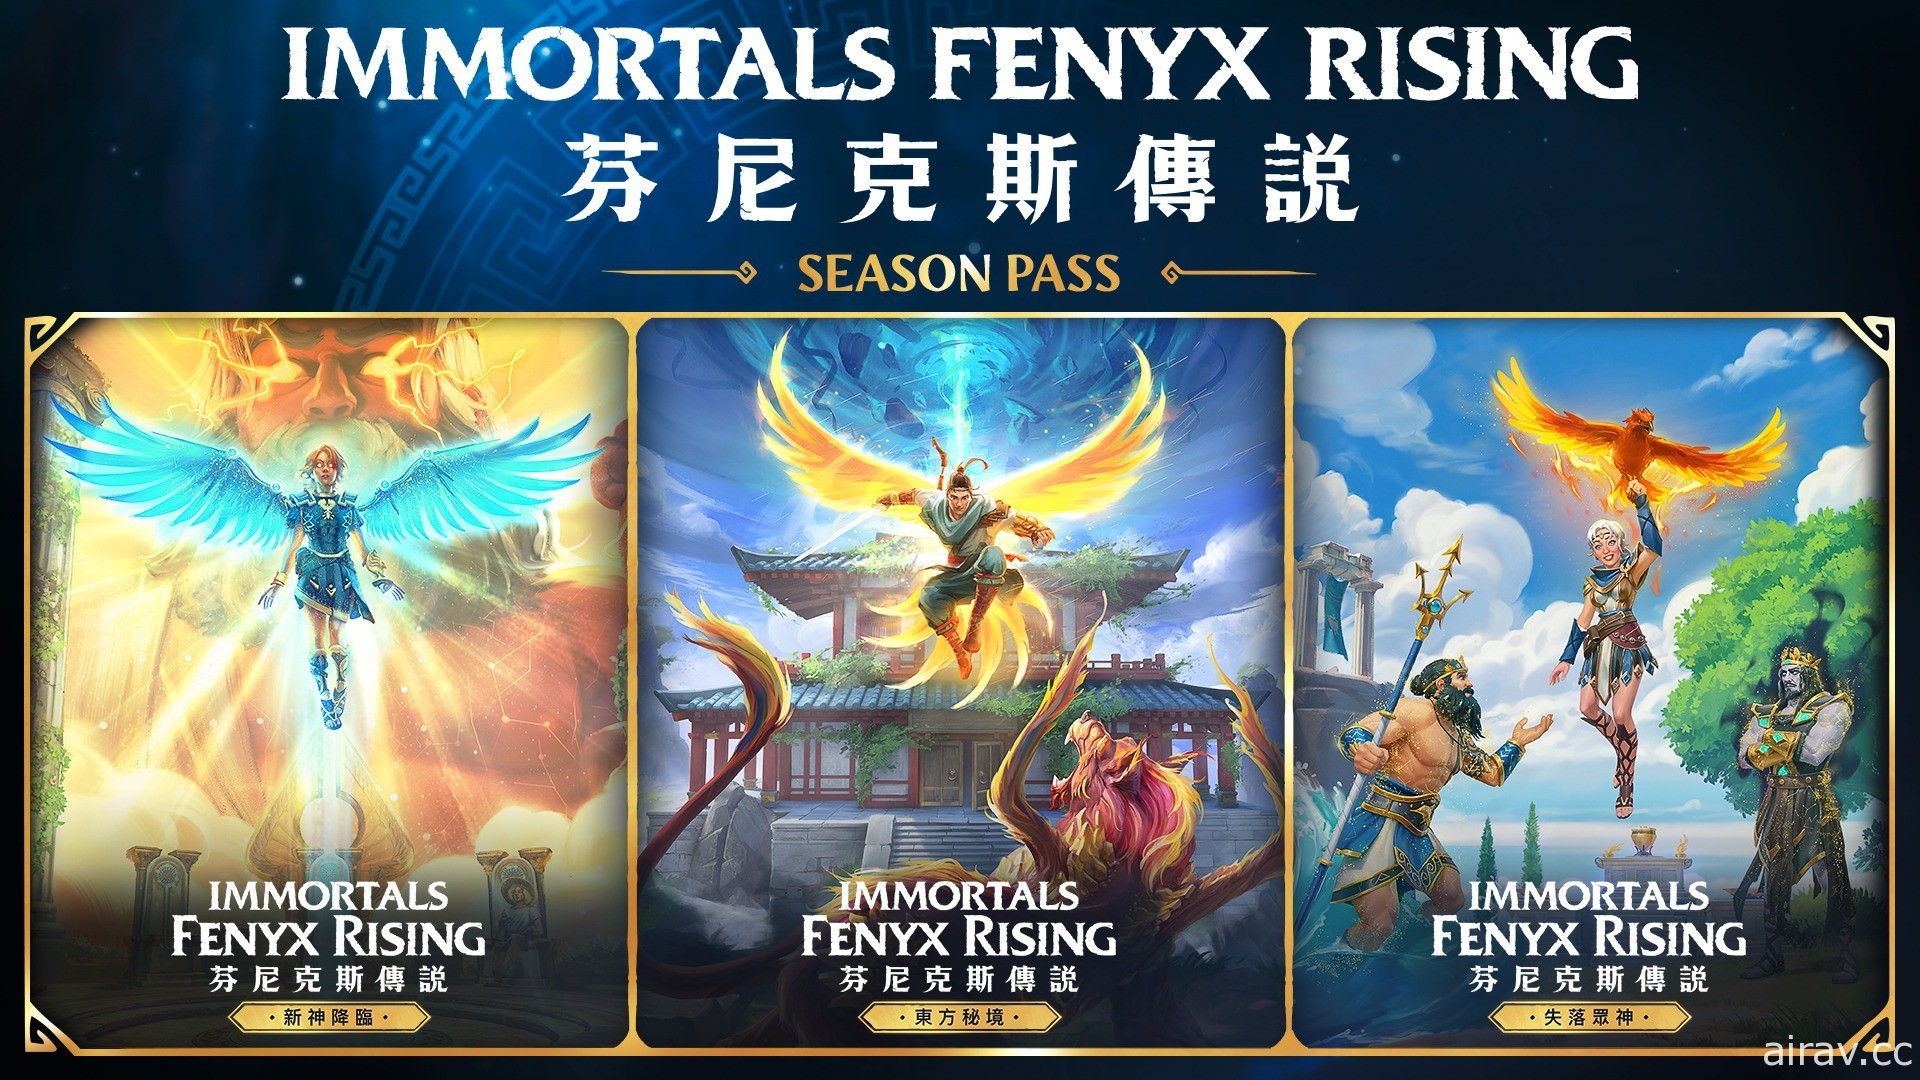 《芬尼克斯傳說》曝光上市後更新計畫 季票將提供靈感來自中國神話的世界